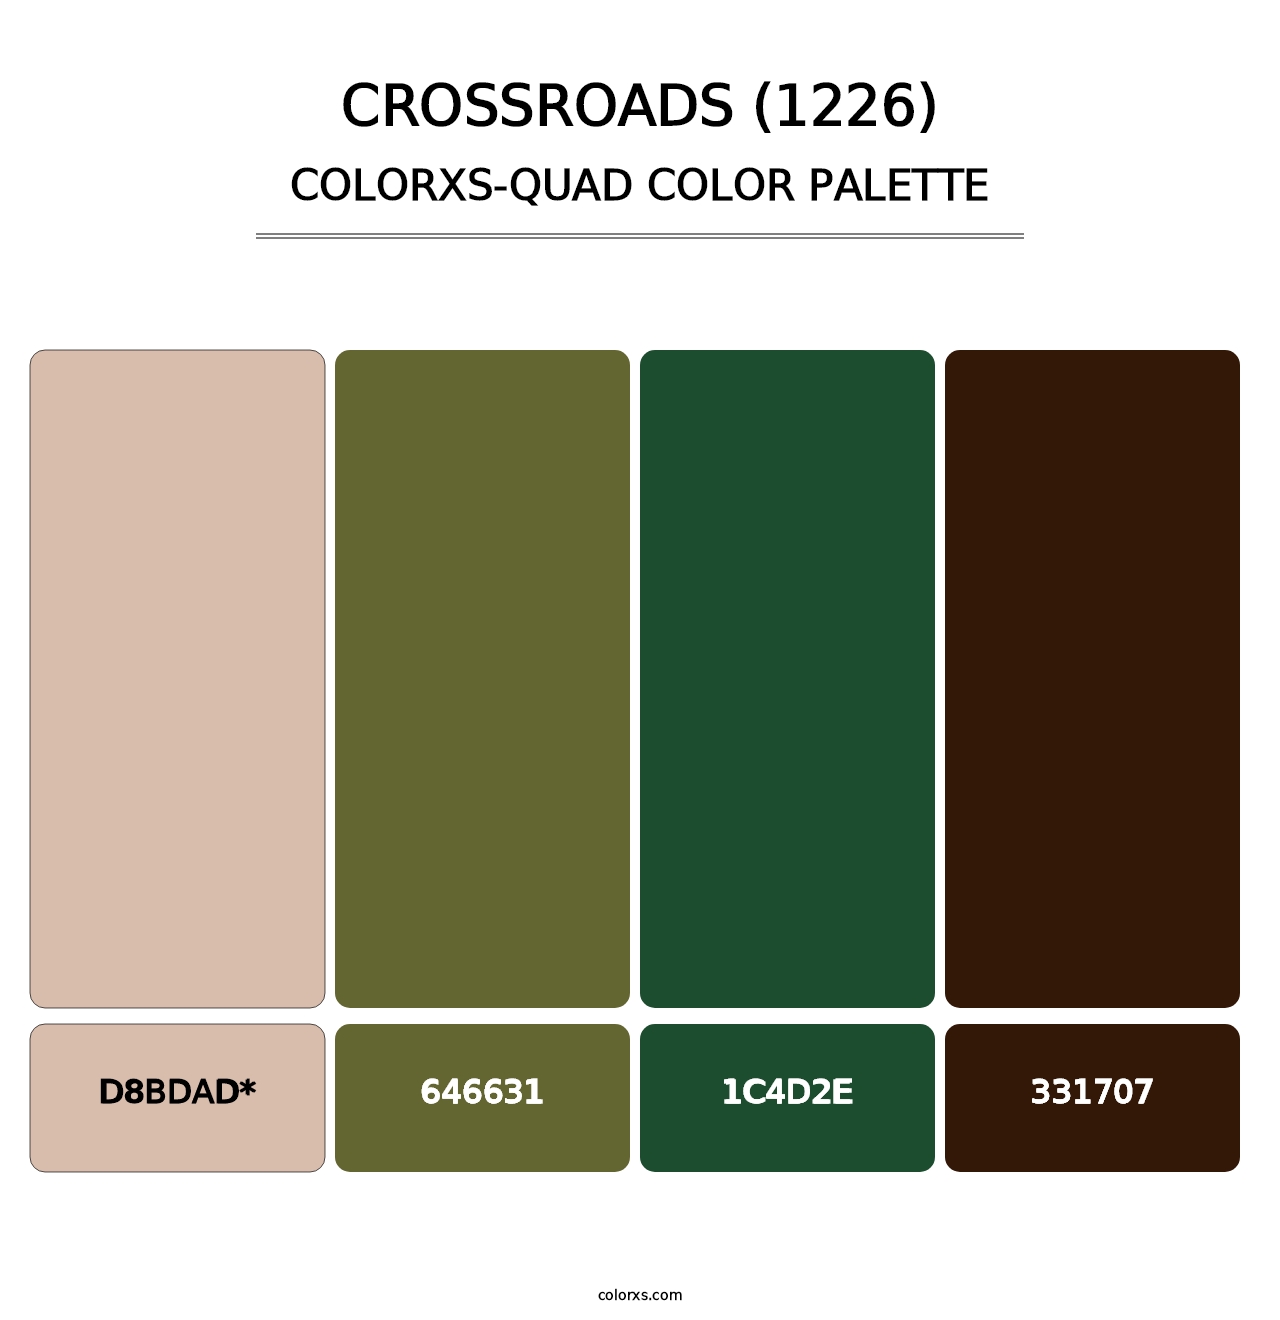 Crossroads (1226) - Colorxs Quad Palette